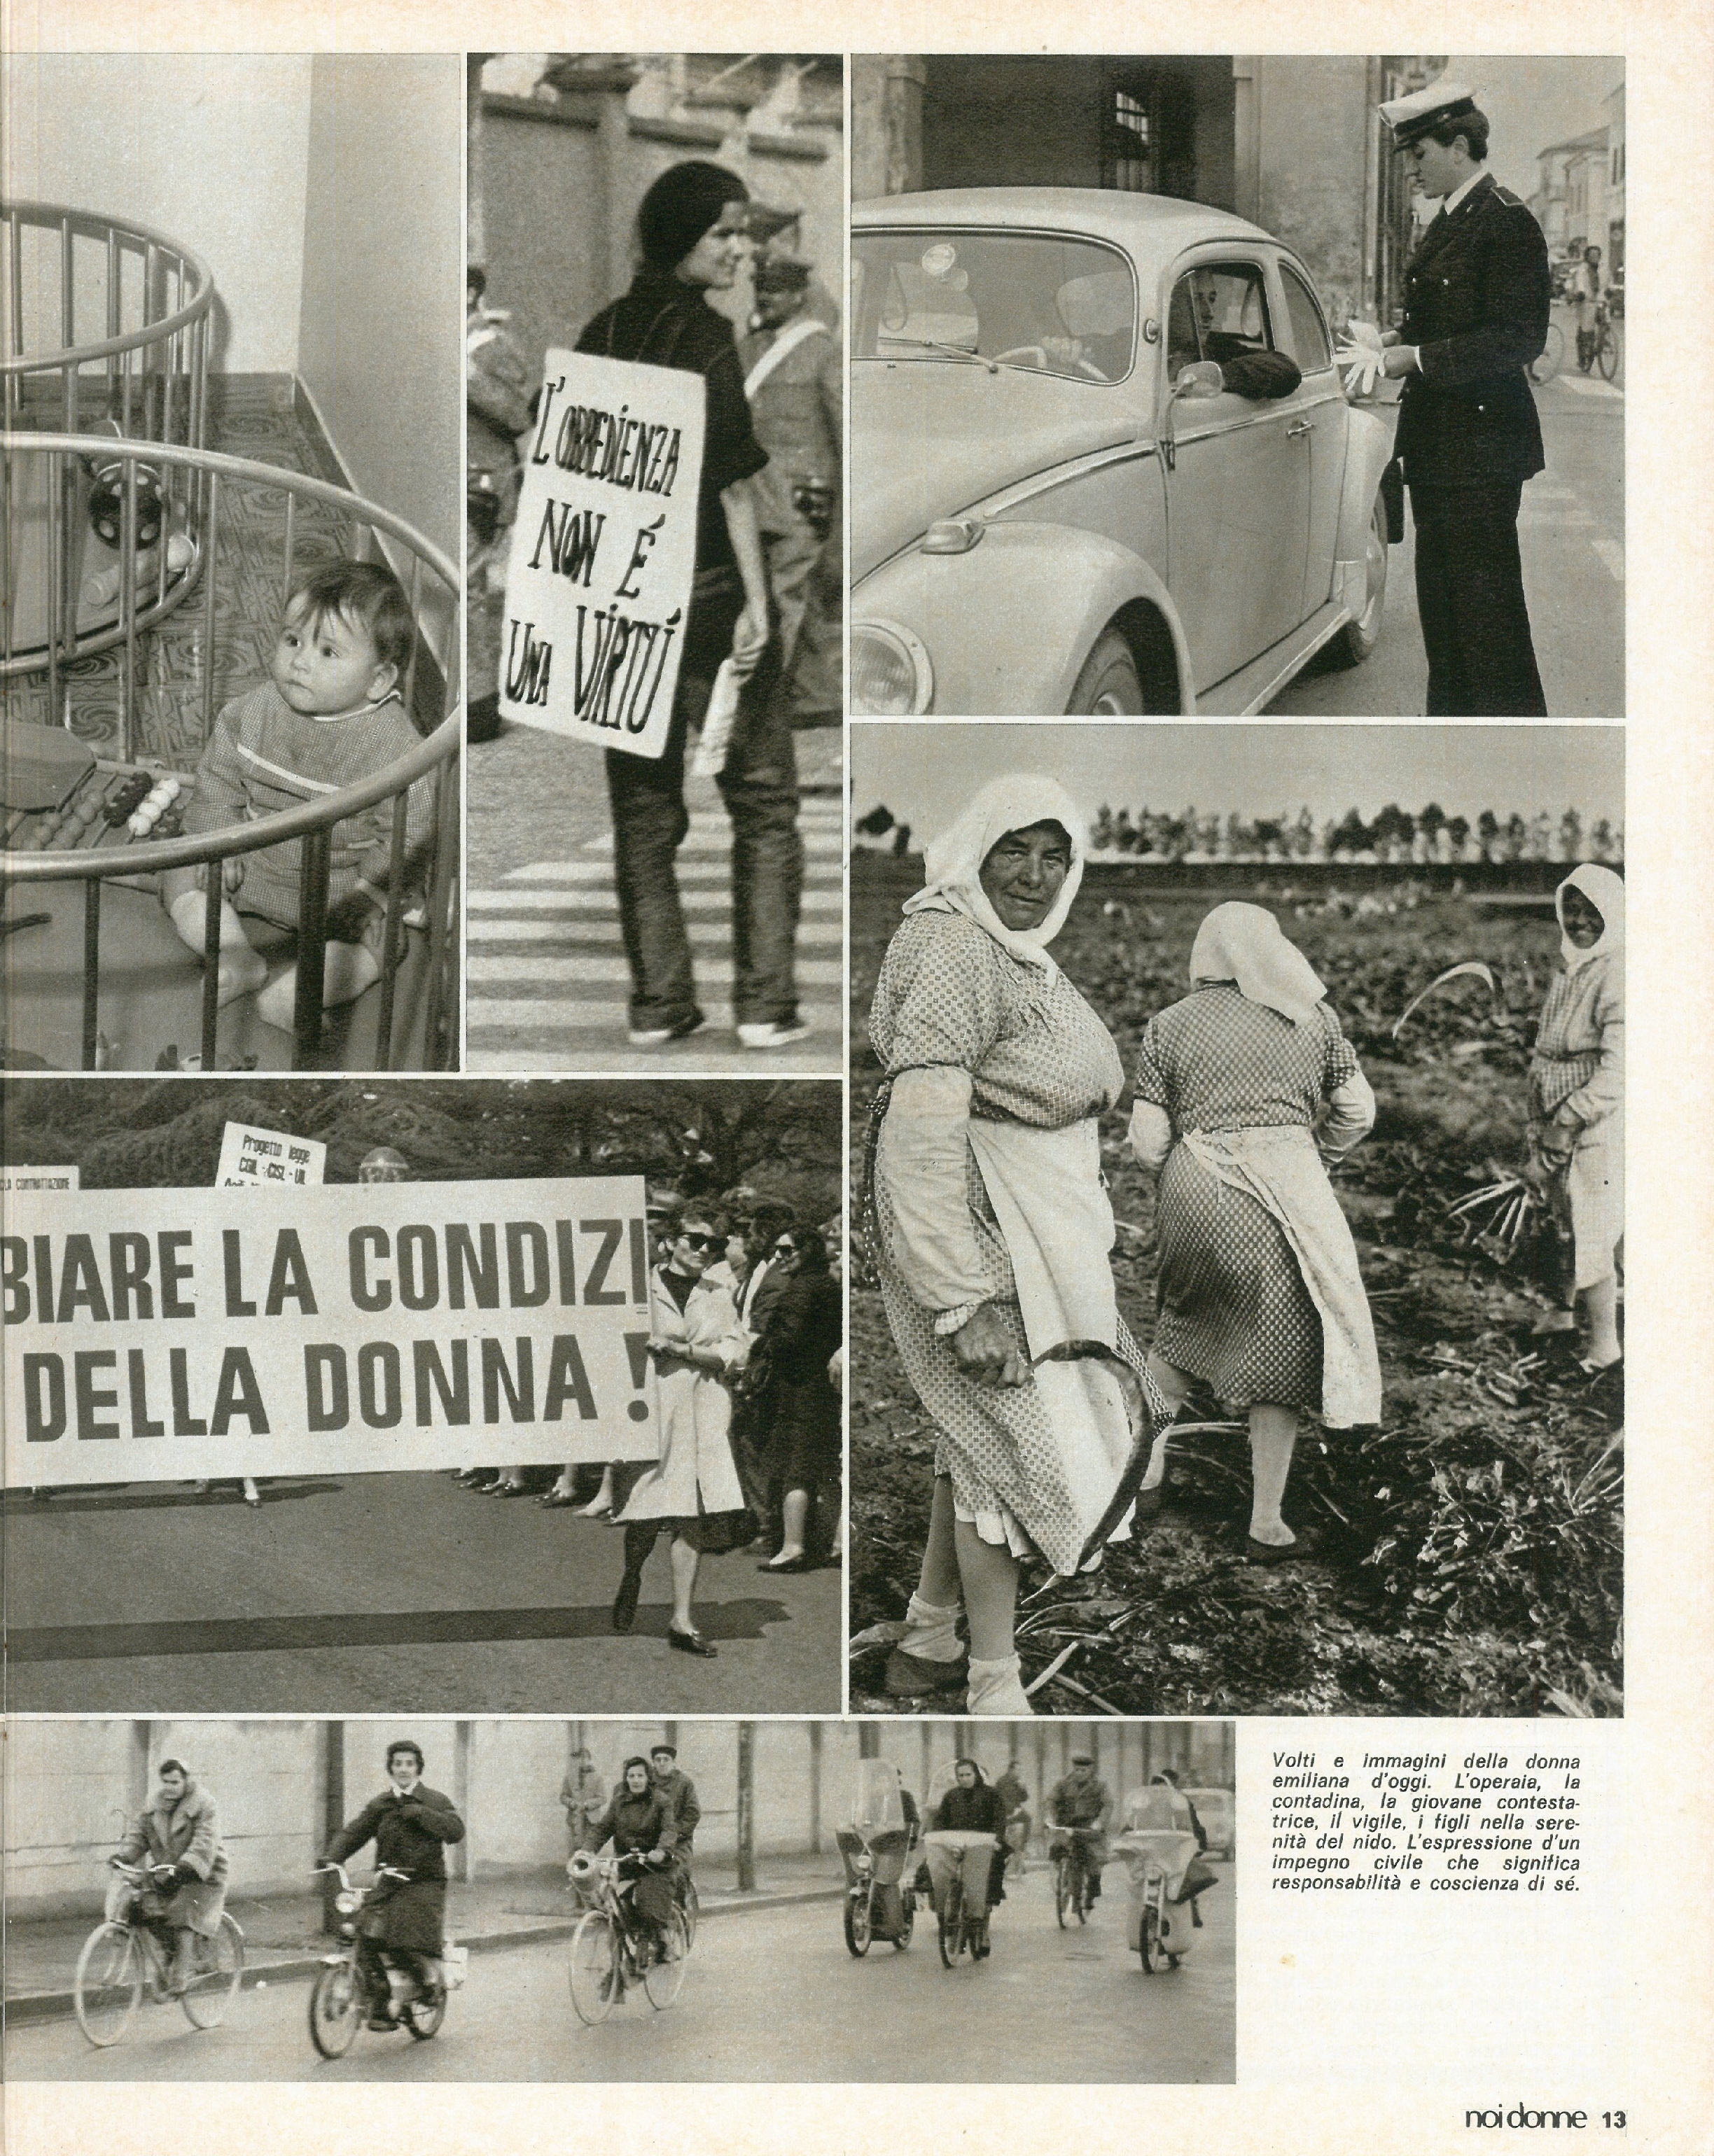 Foto: Emilia Romagna: una regione dove le donne contano; USA: giovani contro la guerra in Vietnam; Minori addandonati